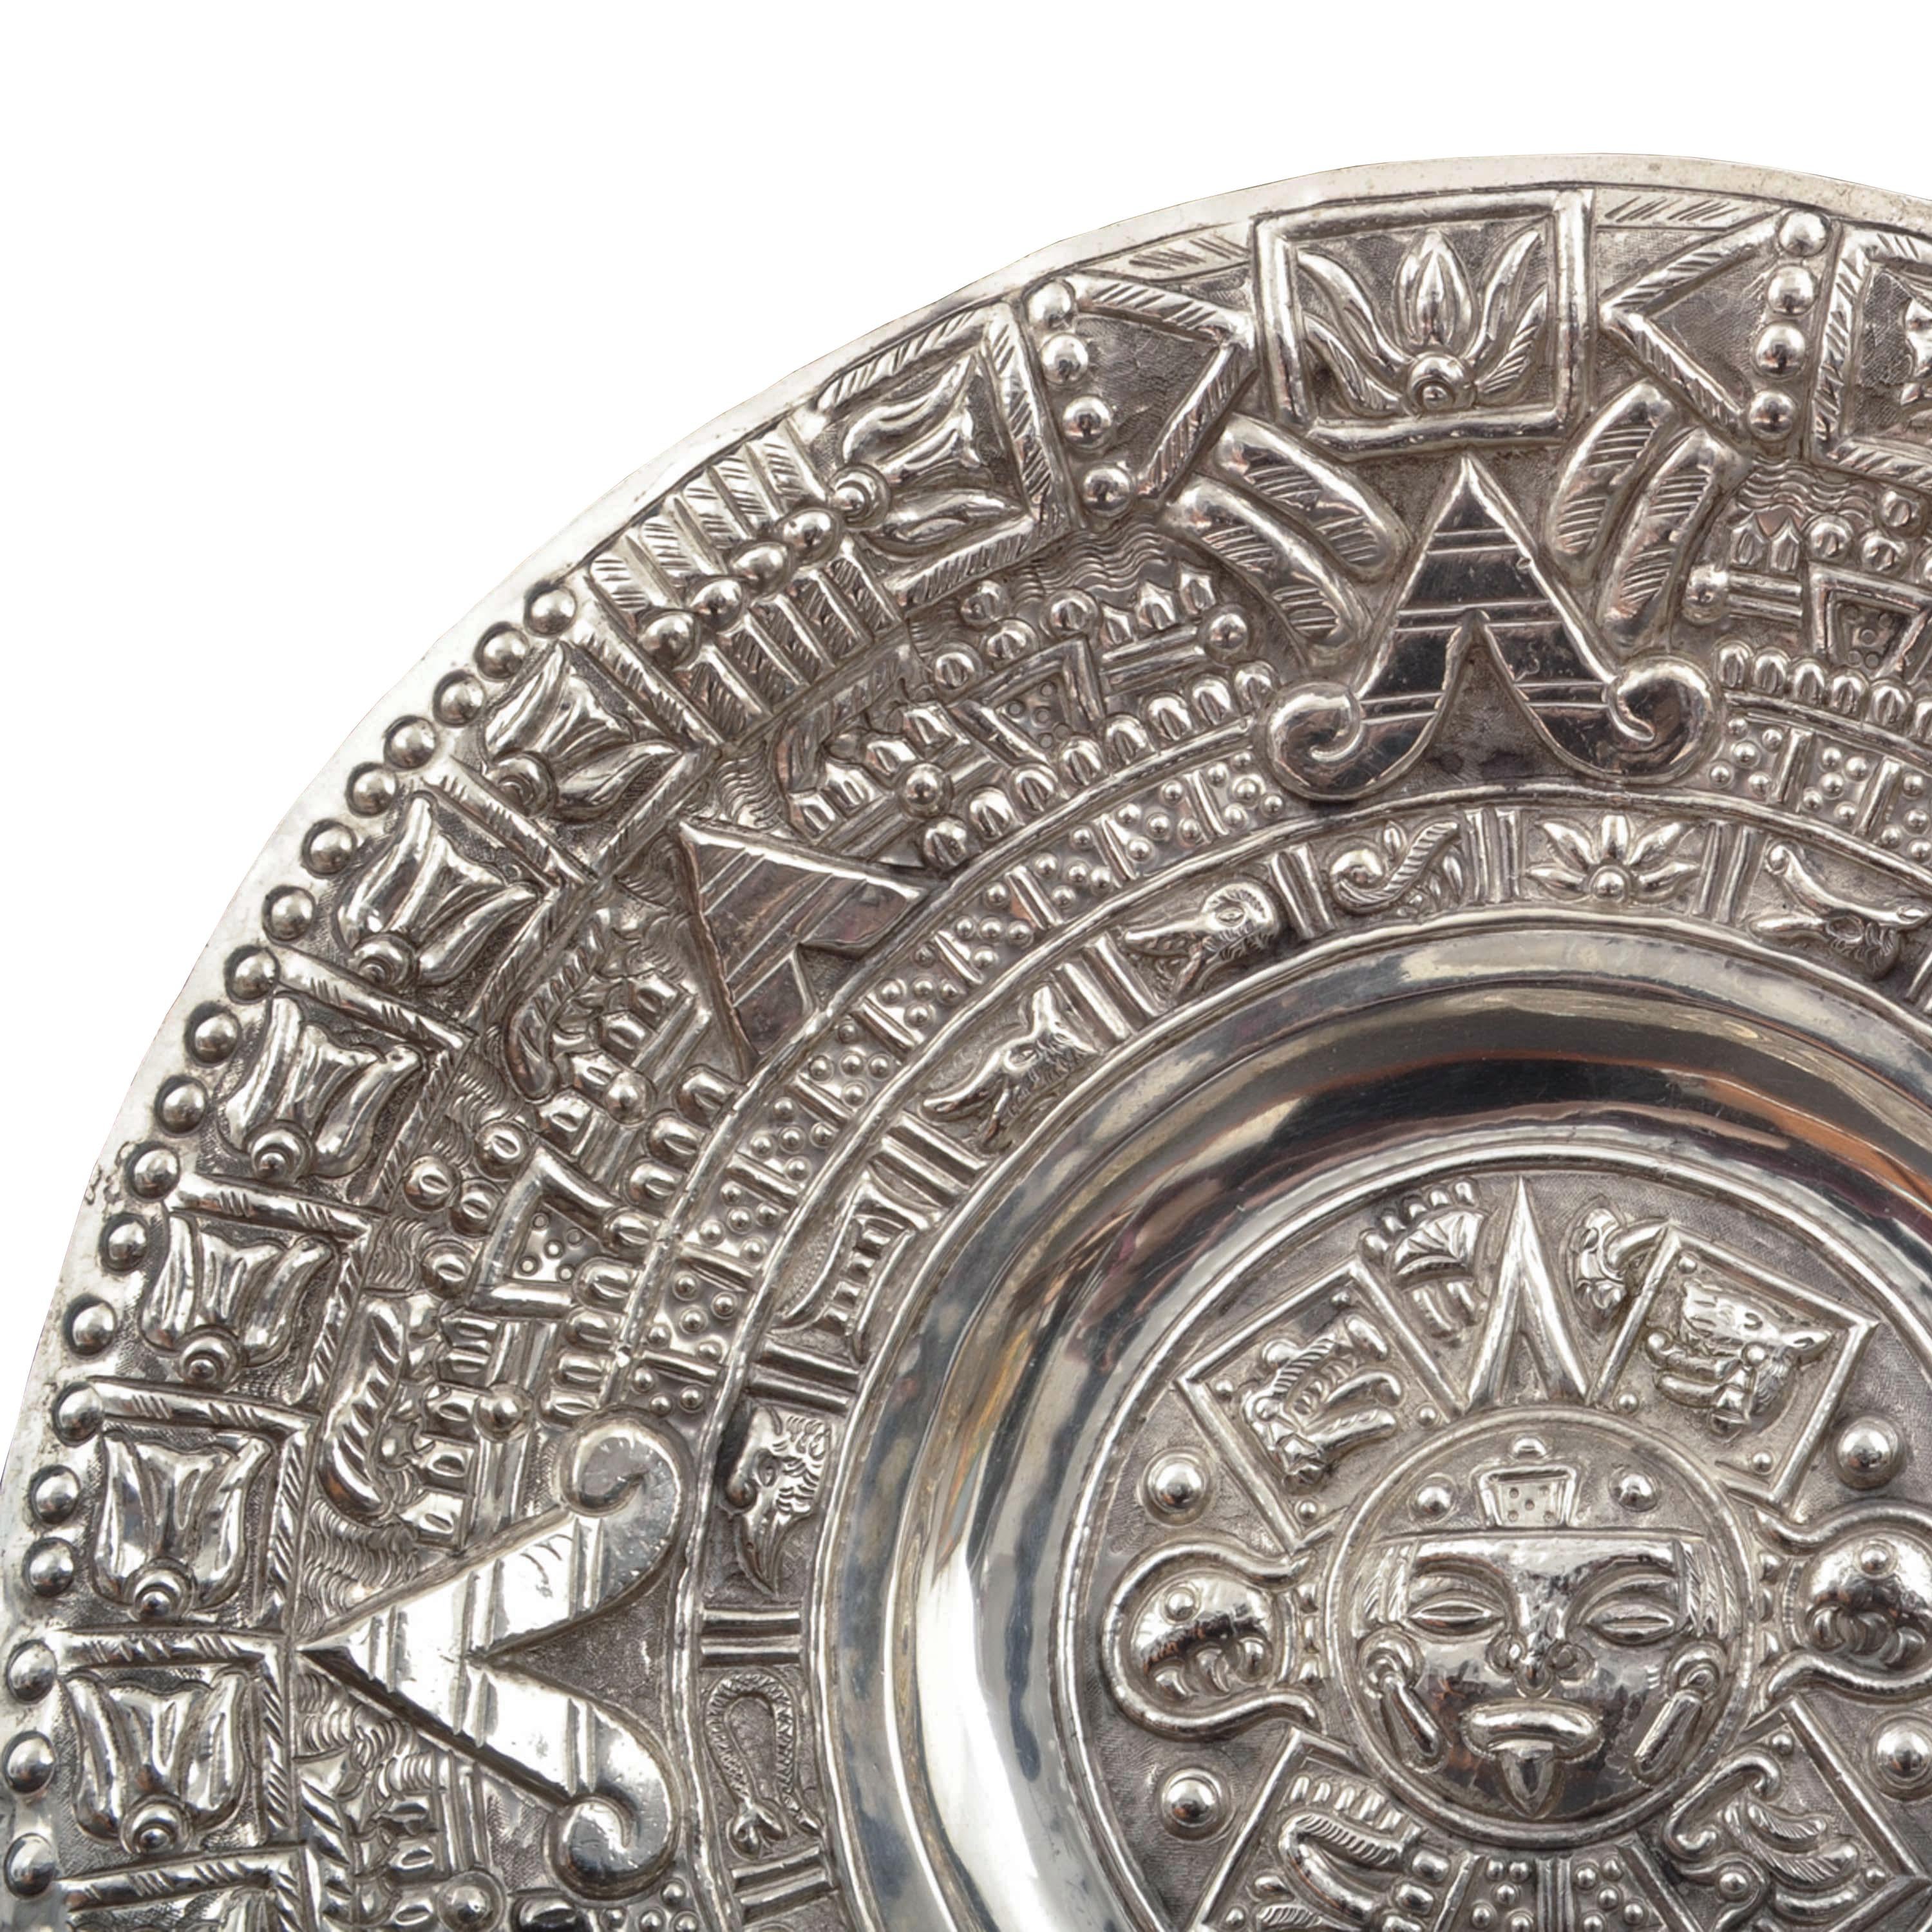 Un bon, grand, Mid-Century Modern Mexican Sterling silver (probablement Taxco) Aztec calendar wall charger, 1960's.
Le chargeur, de grande taille et pesant plus de 397 grammes d'argent, représente le calendrier aztèque avec un masque solaire aztèque